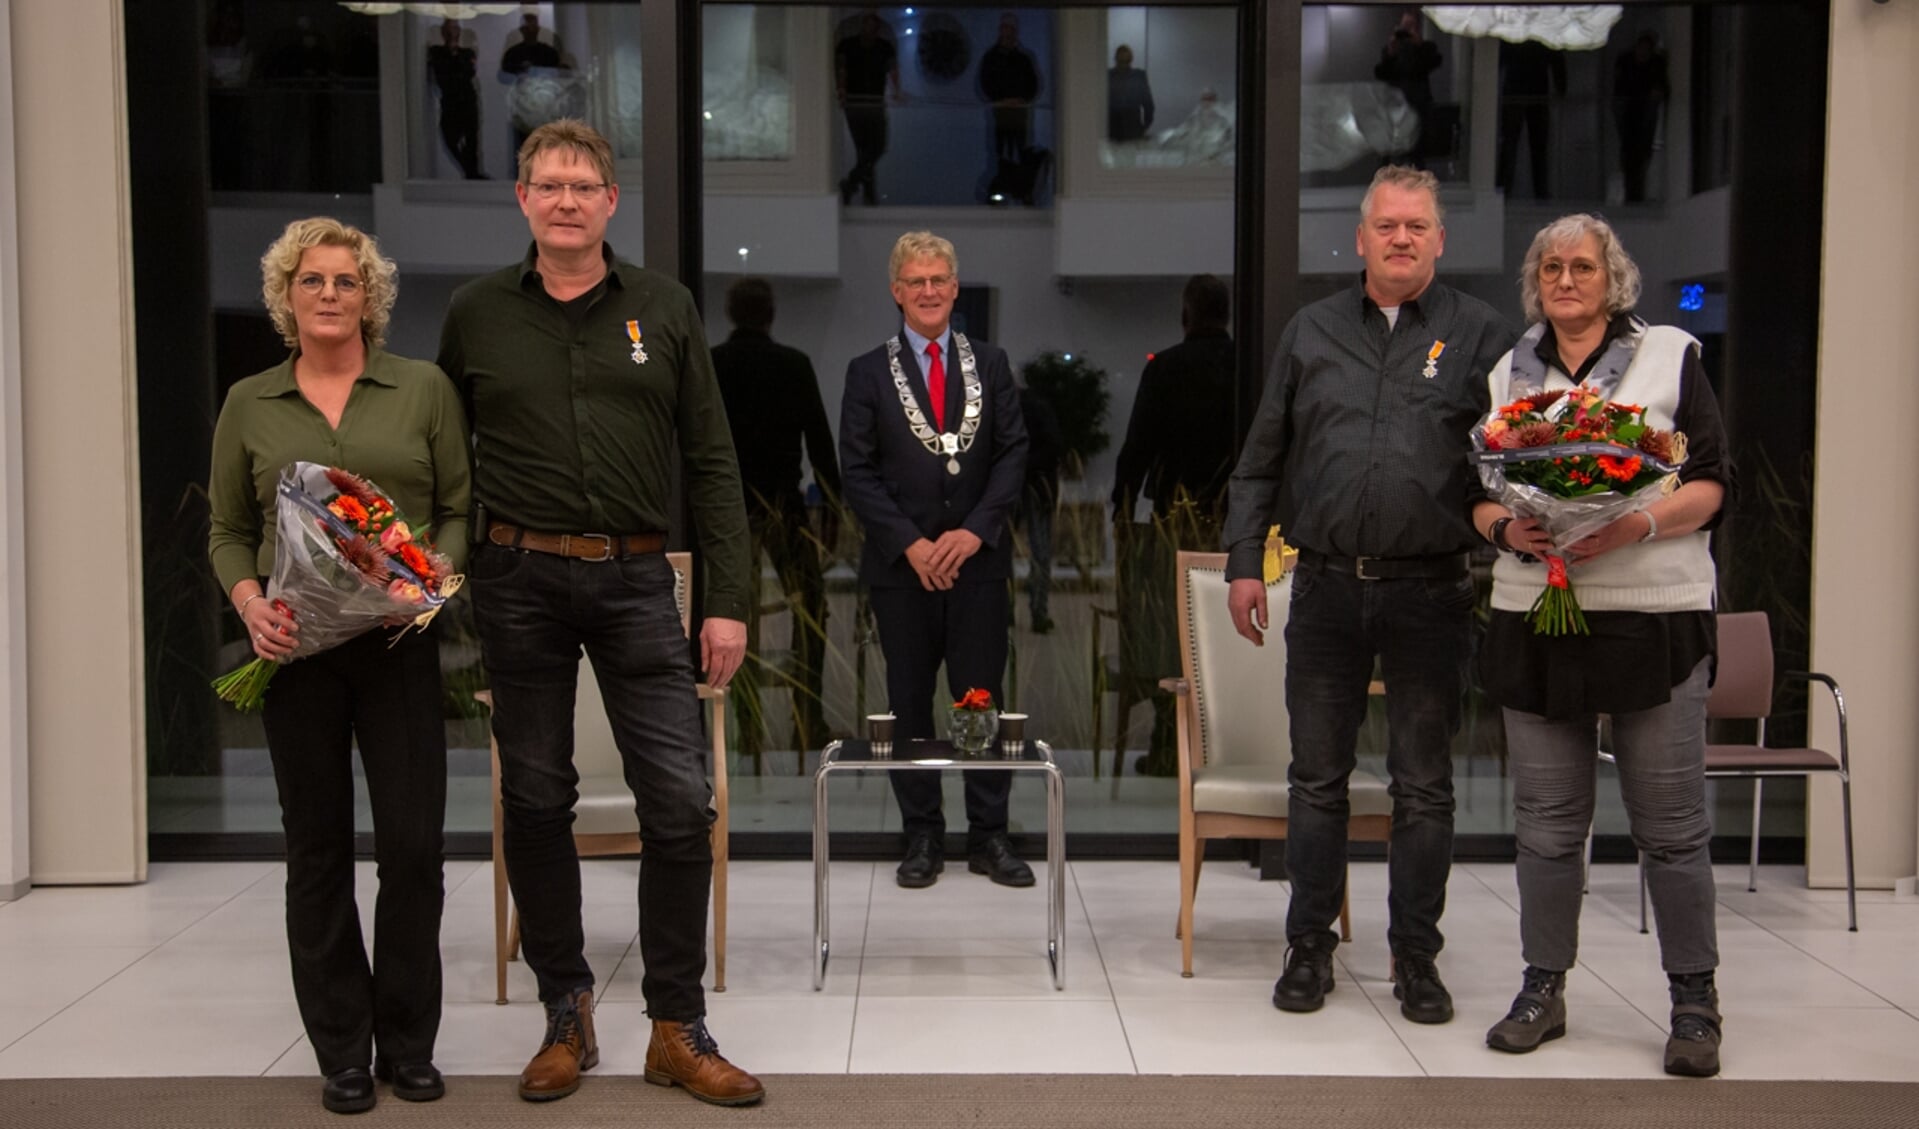 Jan Wiersma en Jelle Witteveen uit Surhuisterveen ontvingen in de Riedseal van het gemeentehuis te Buitenpost een onderscheiding.